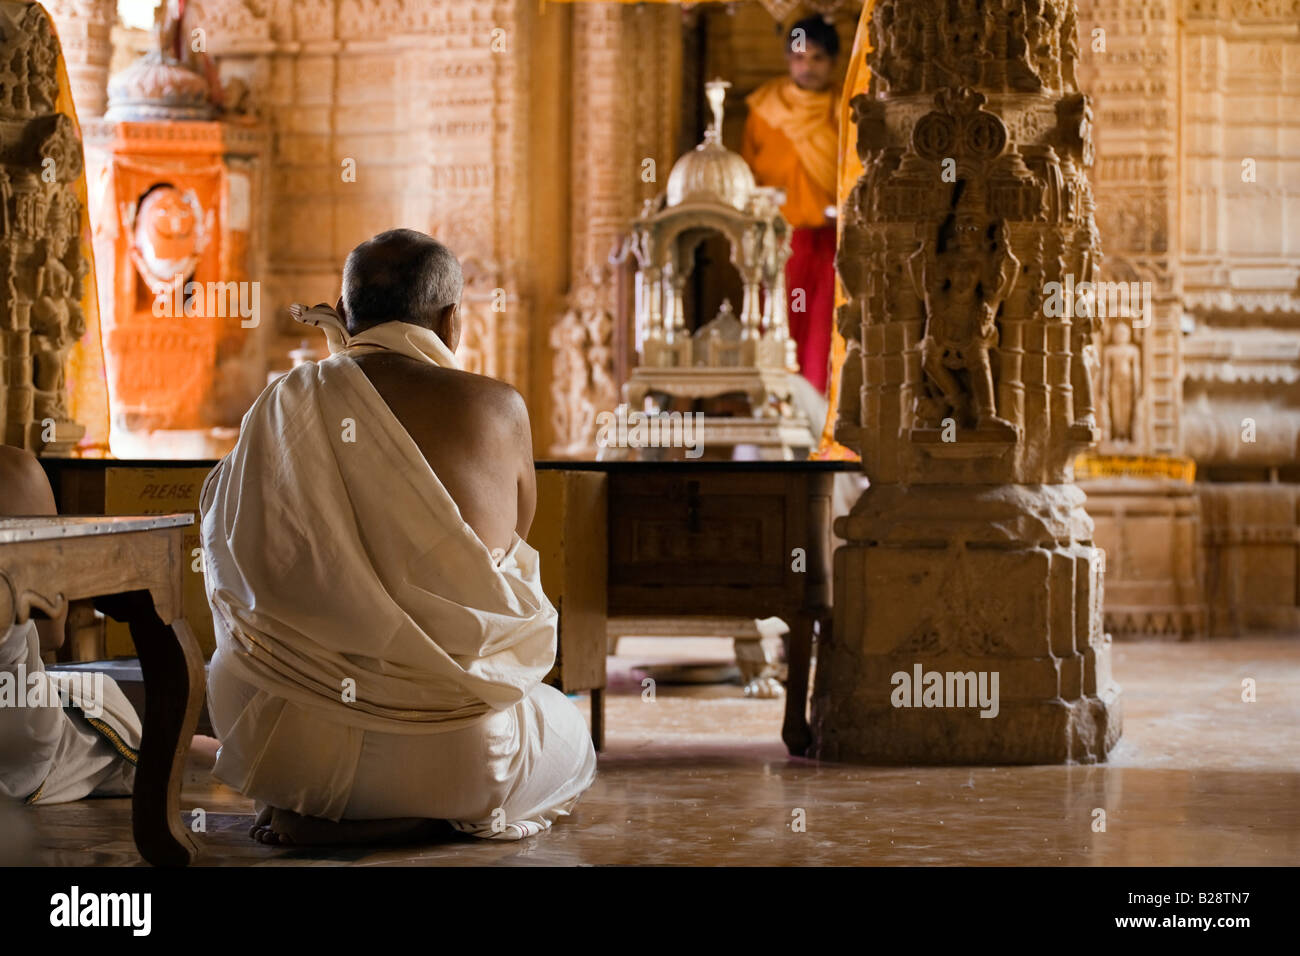 Un dévot Jain fait une prière à l'intérieur d'un temple Jain dans le FORT DE JAISALMER RAJASTHAN INDE Banque D'Images